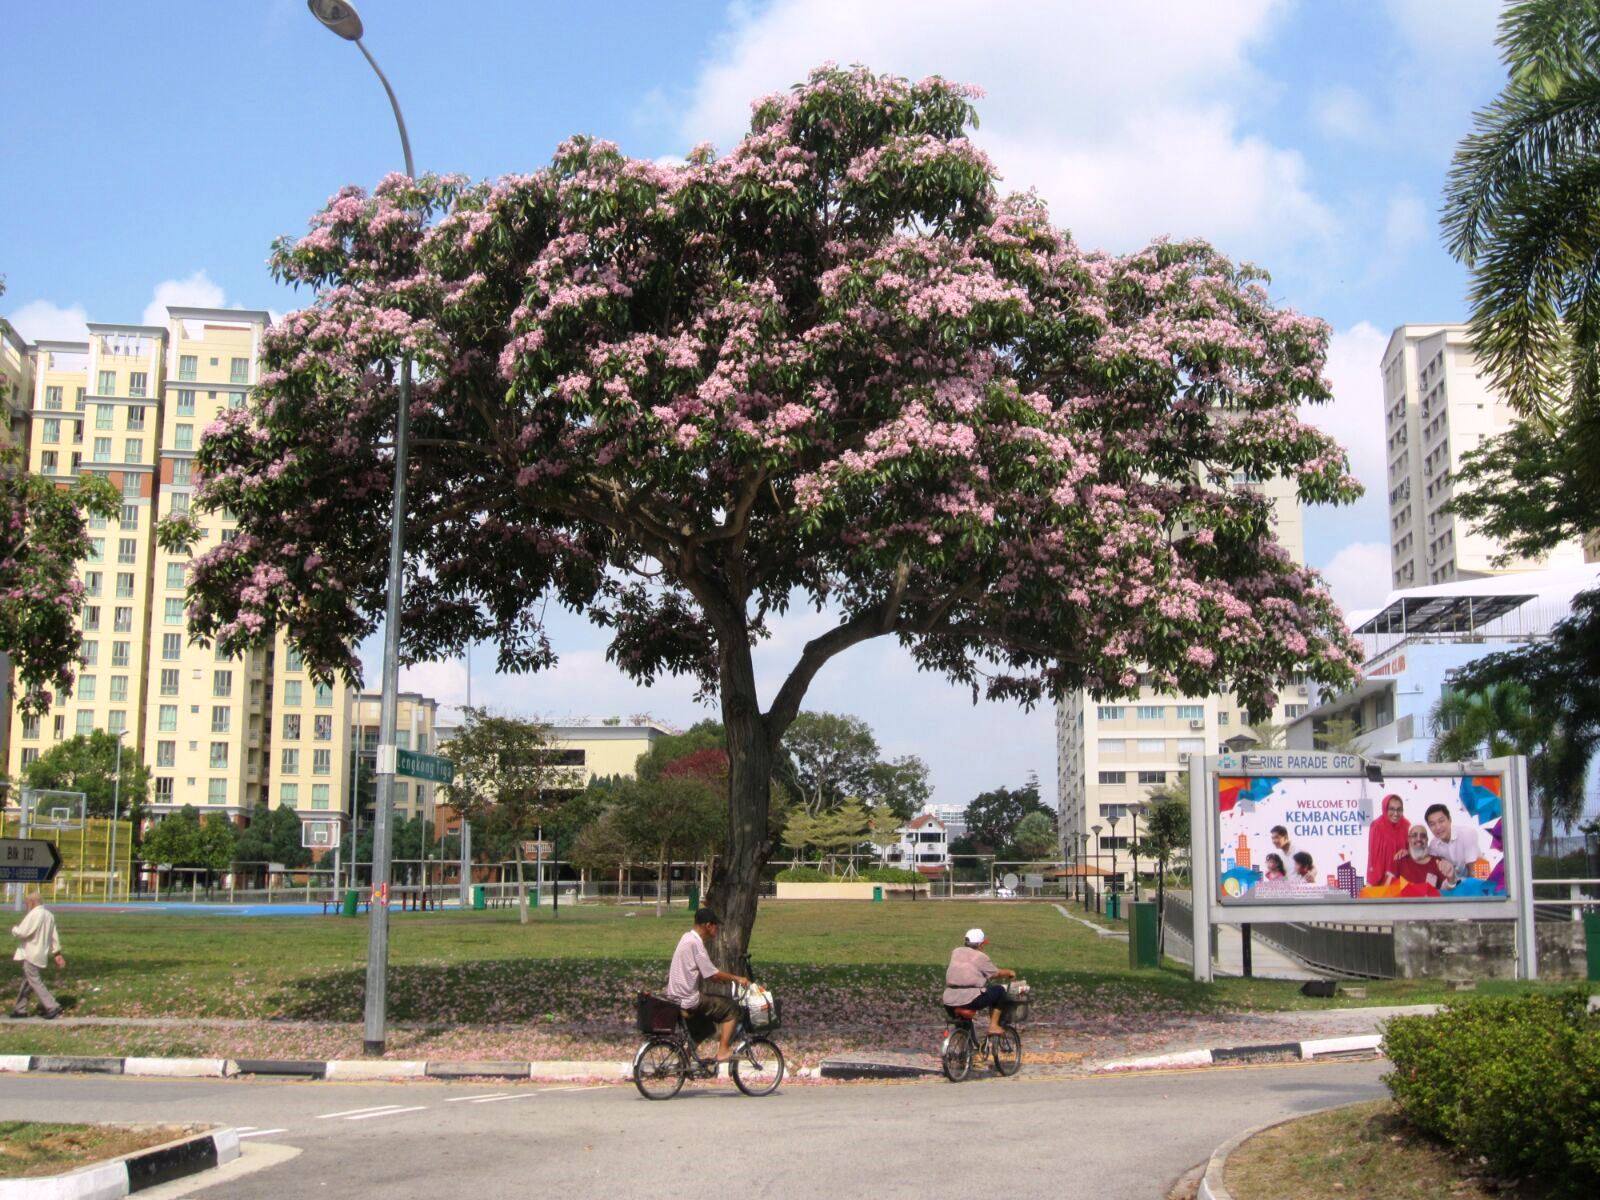 やっとシンガポールの春 、 桜開花が始まったっぽい。